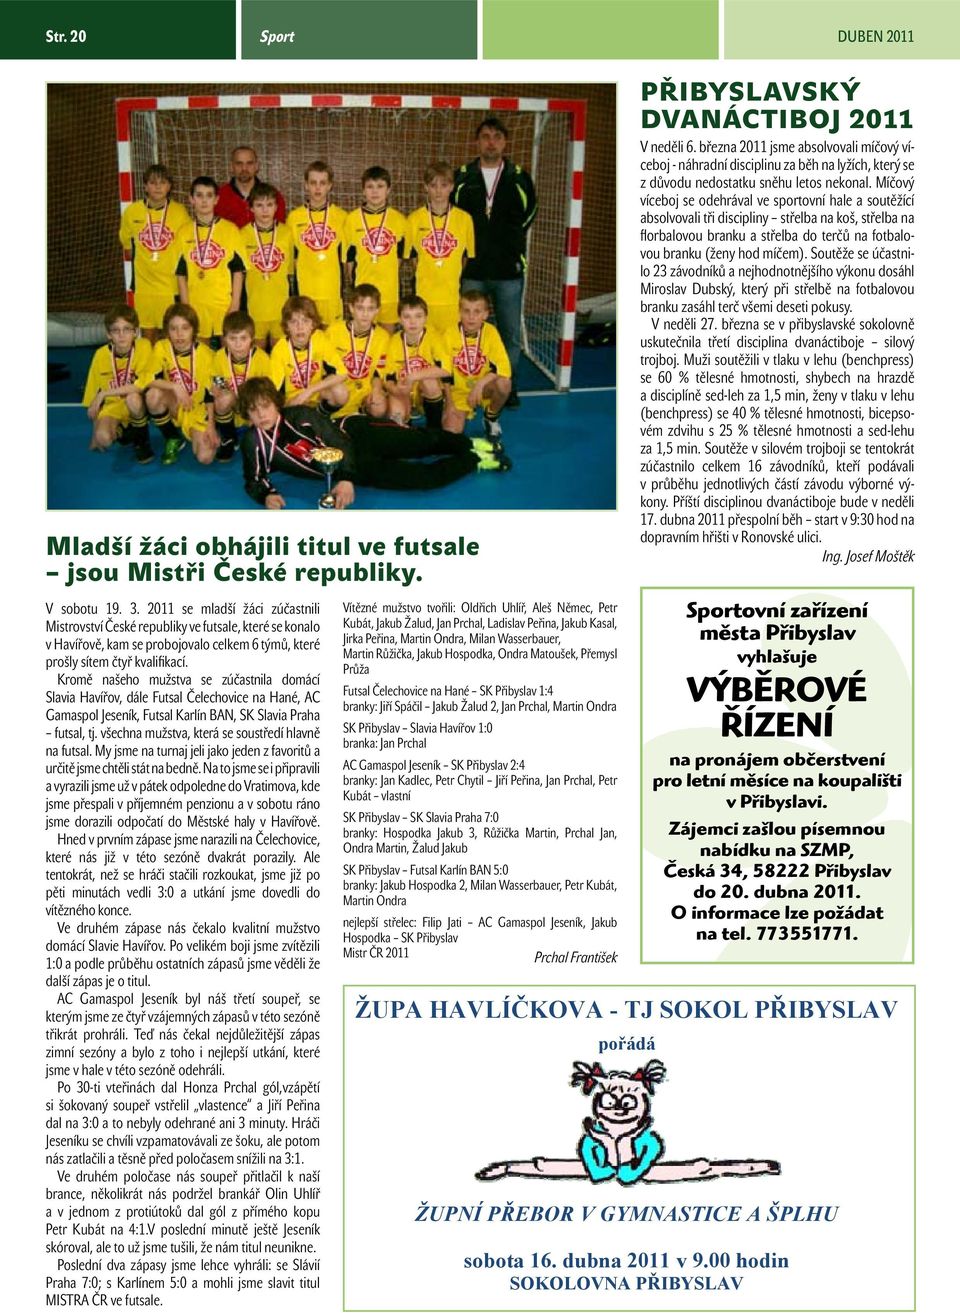 Kromě našeho mužstva se zúčastnila domácí Slavia Havířov, dále Futsal Čelechovice na Hané, AC Gamaspol Jeseník, Futsal Karlín BAN, SK Slavia Praha futsal, tj.